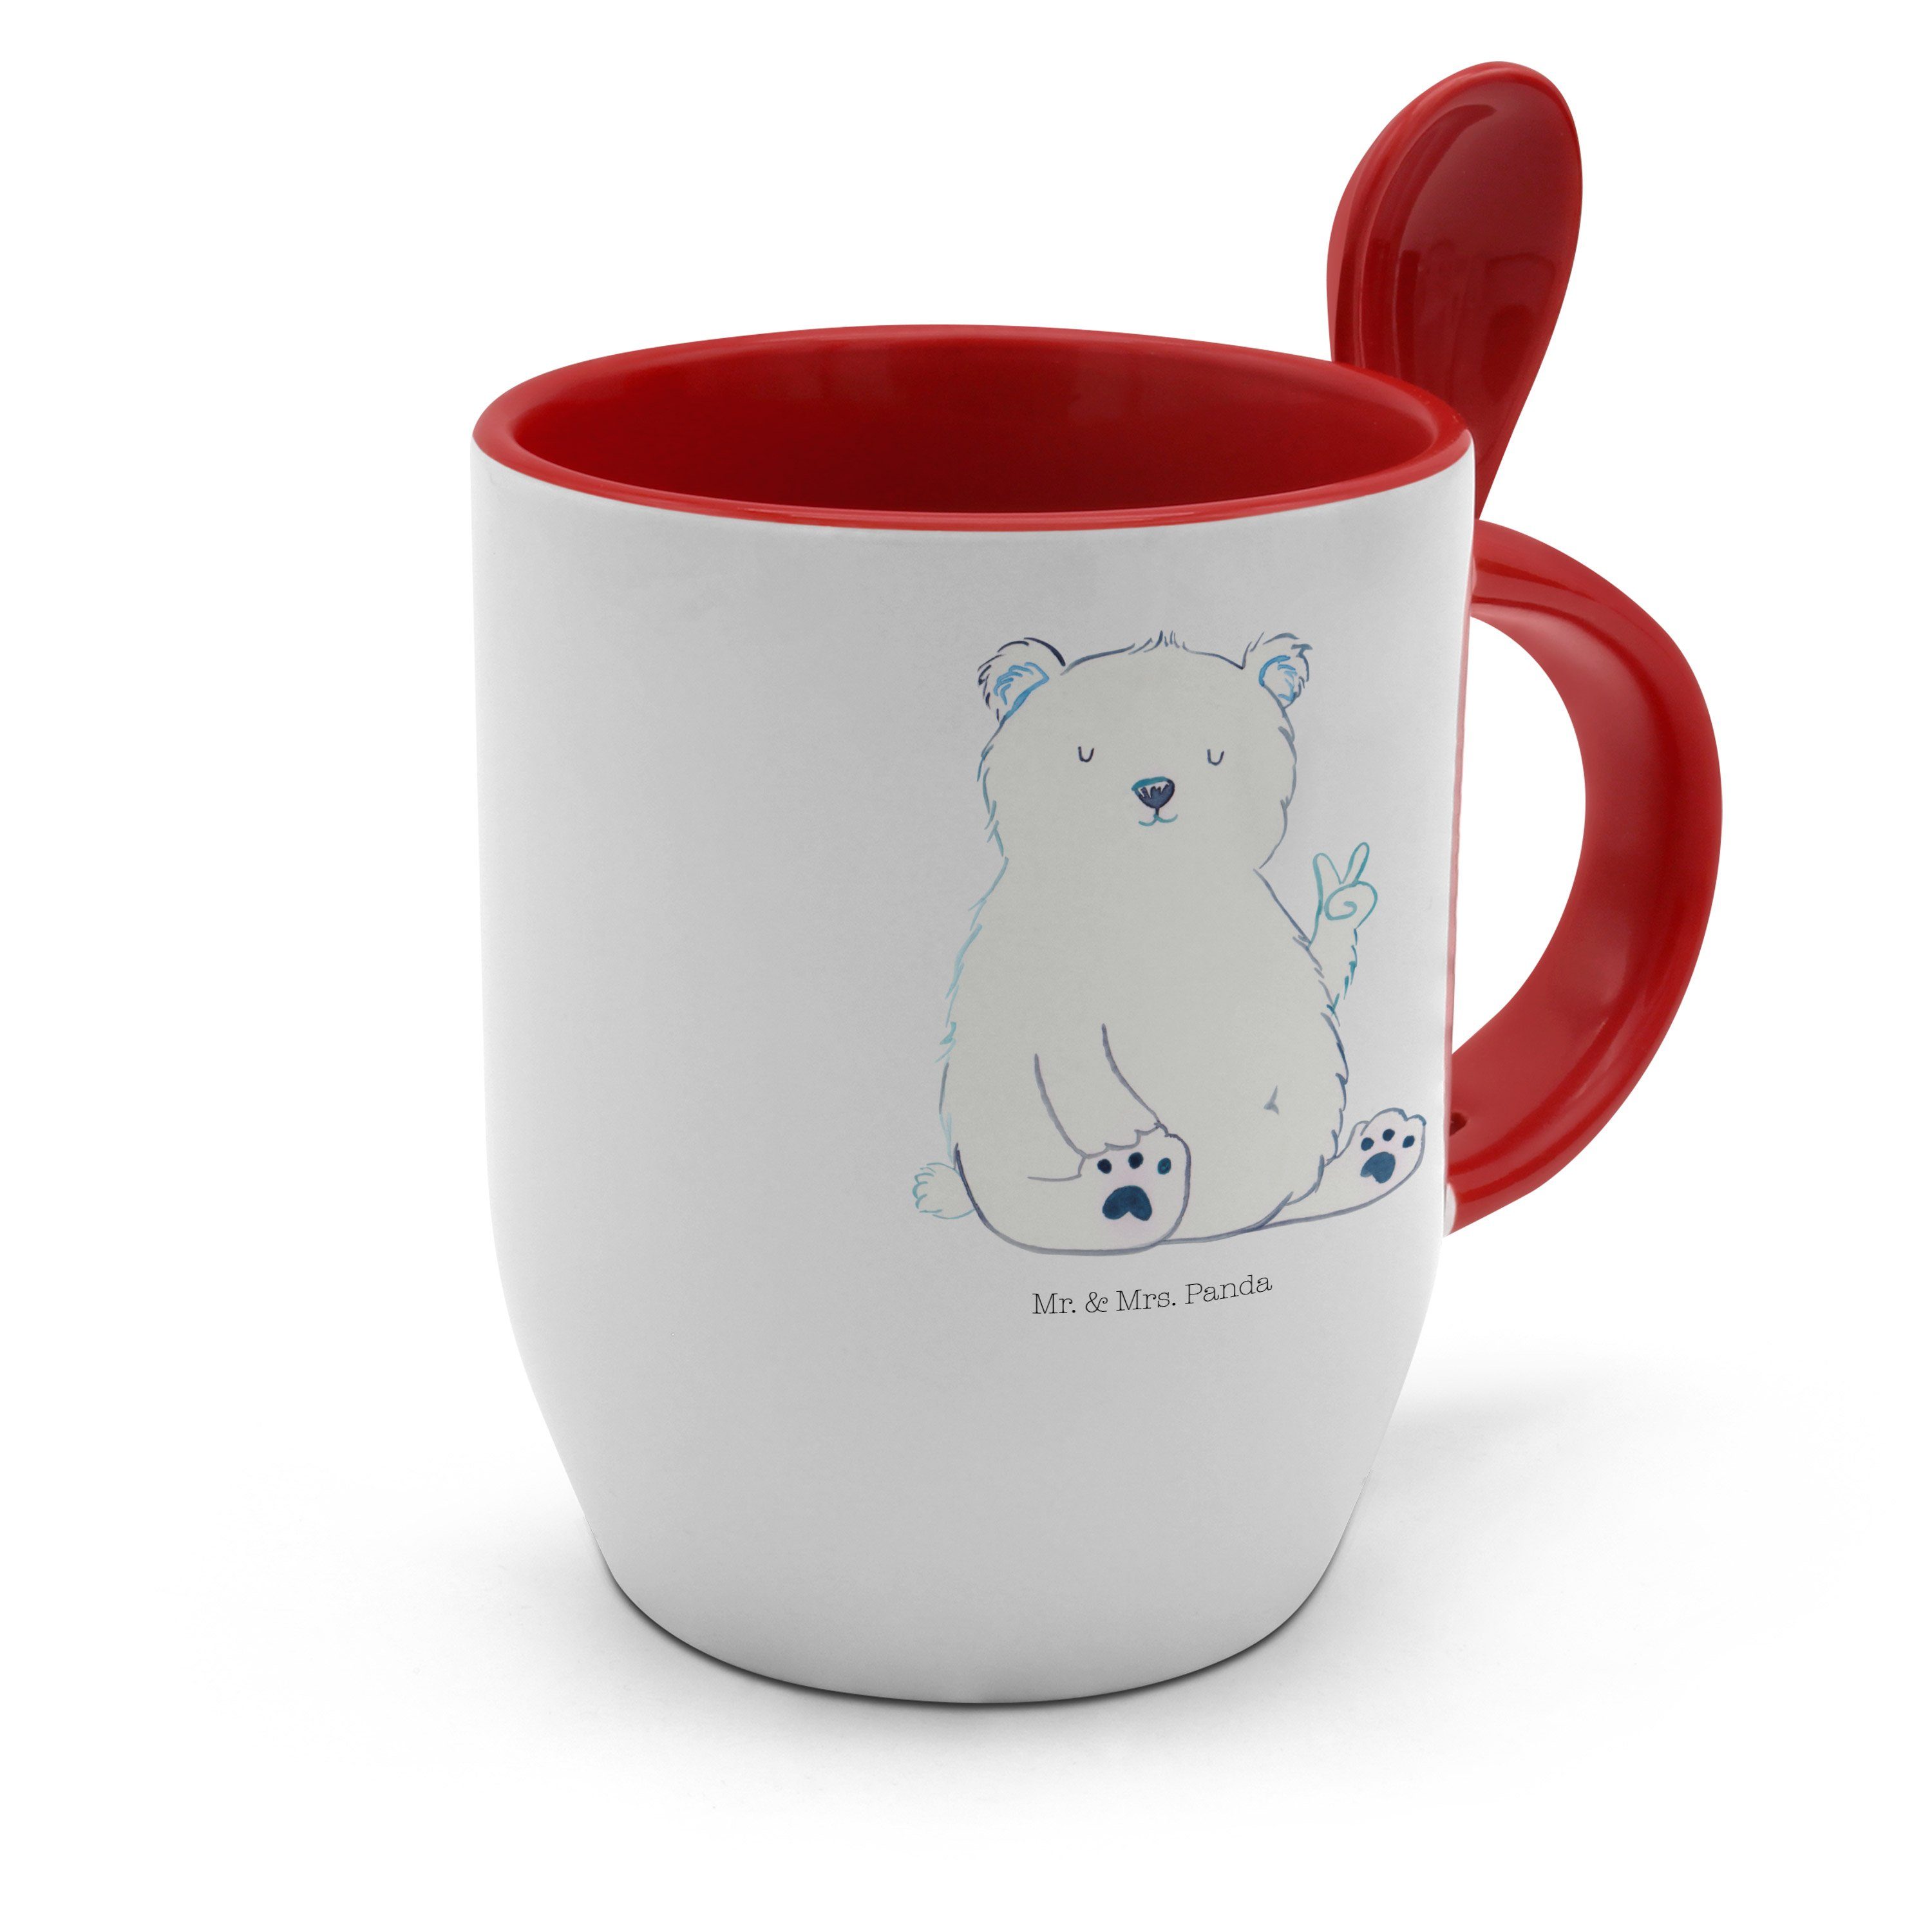 Mr. & Mrs. Panda Tasse Weiß - Teddybär, Kaffeebecher, Eisbär Geschenk, Teddy, Faul Keramik Relaxen, 